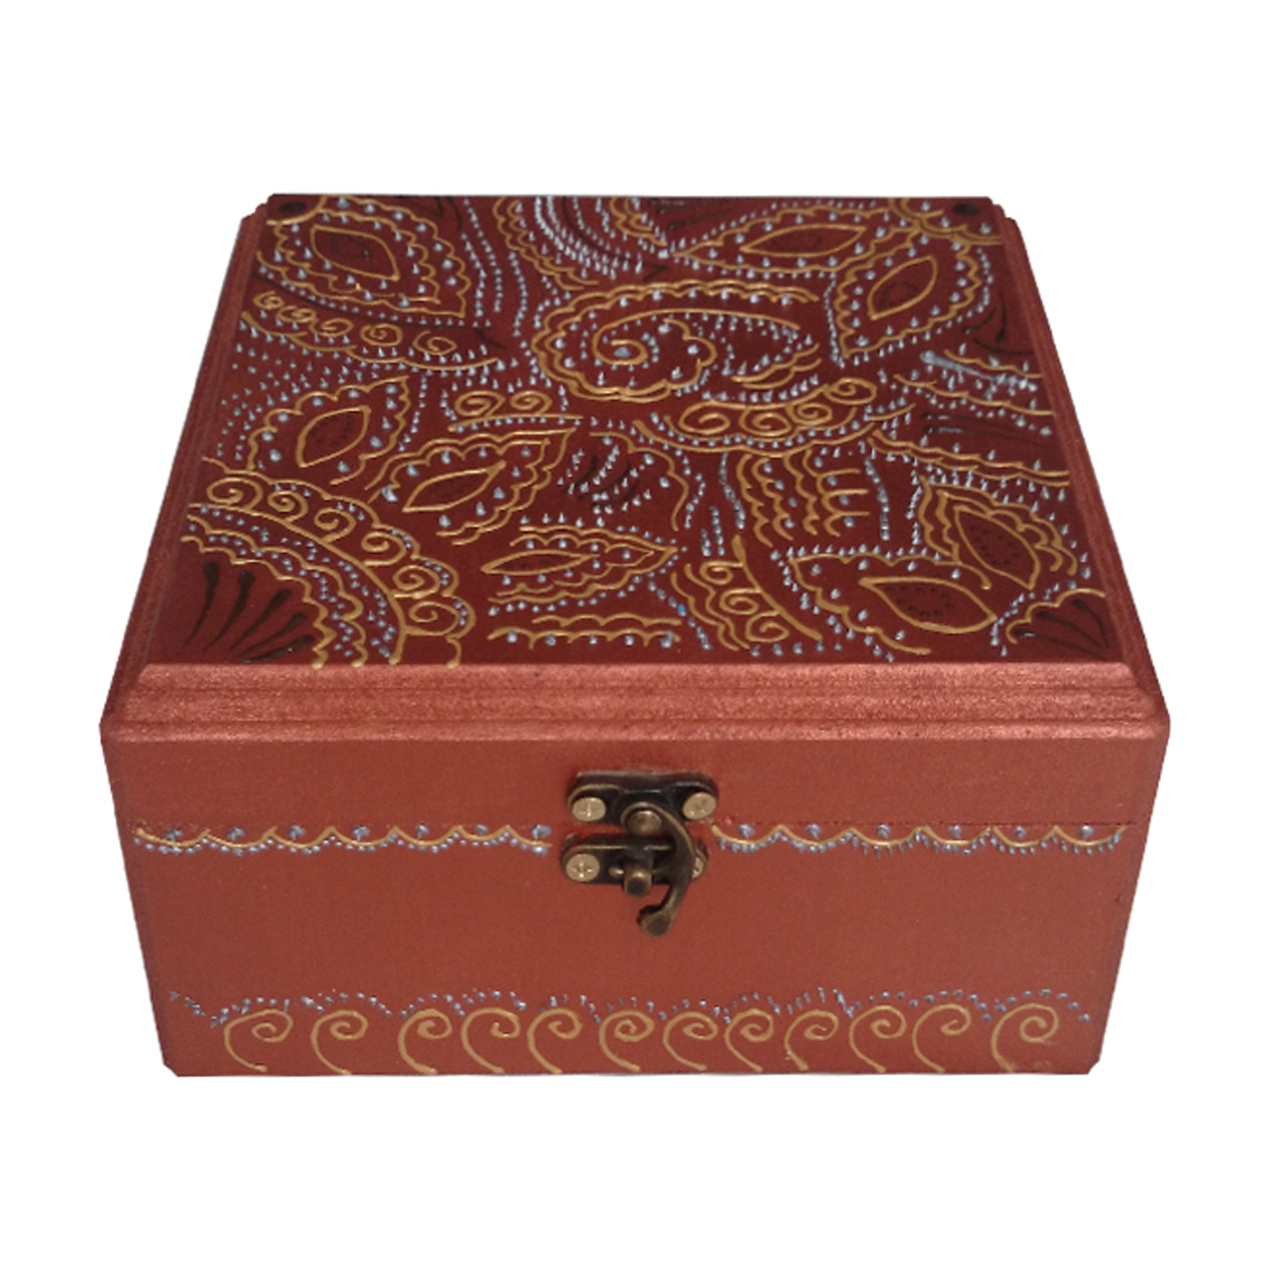 جعبه جواهرات چوبی یک هدیه خوب کد 1383665